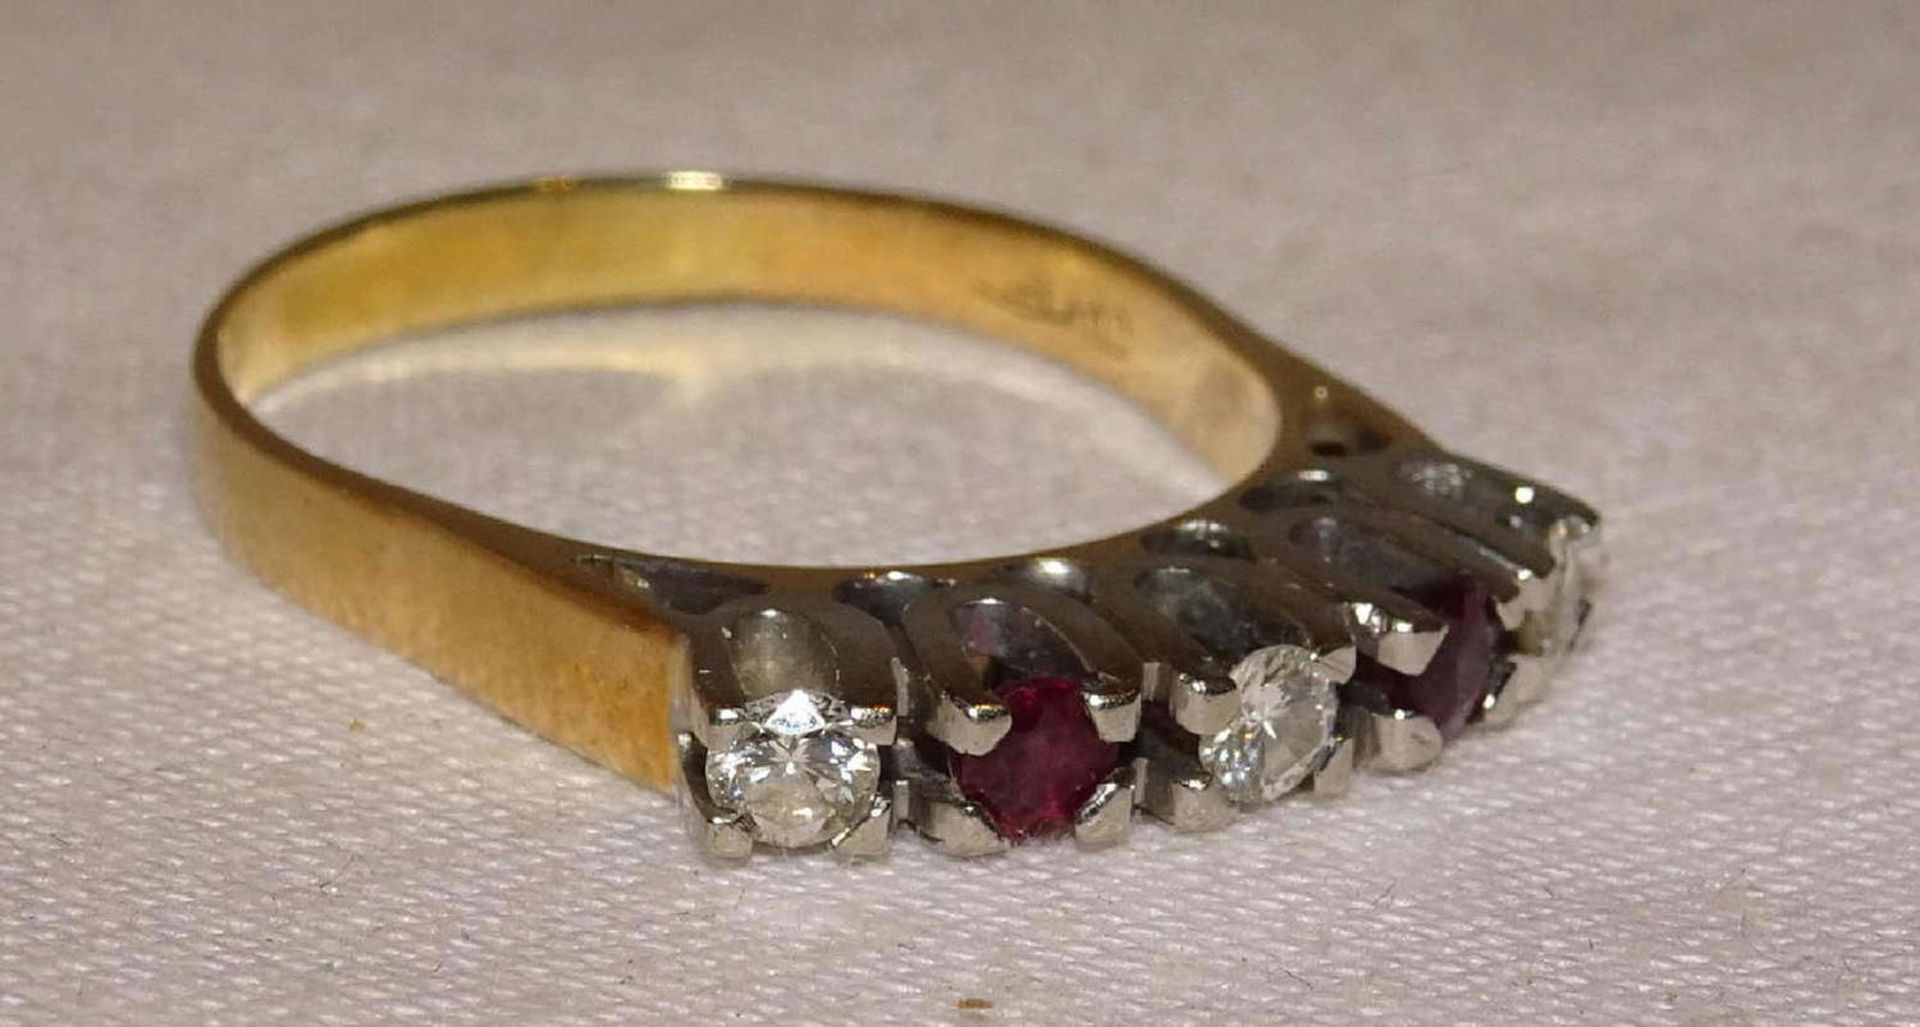 Damenring, 585er Gelbgold, besetzt mit Rubinen und Brillanten. Ringgröße 58. Gewicht ca. 3,62 gr. - Bild 2 aus 3